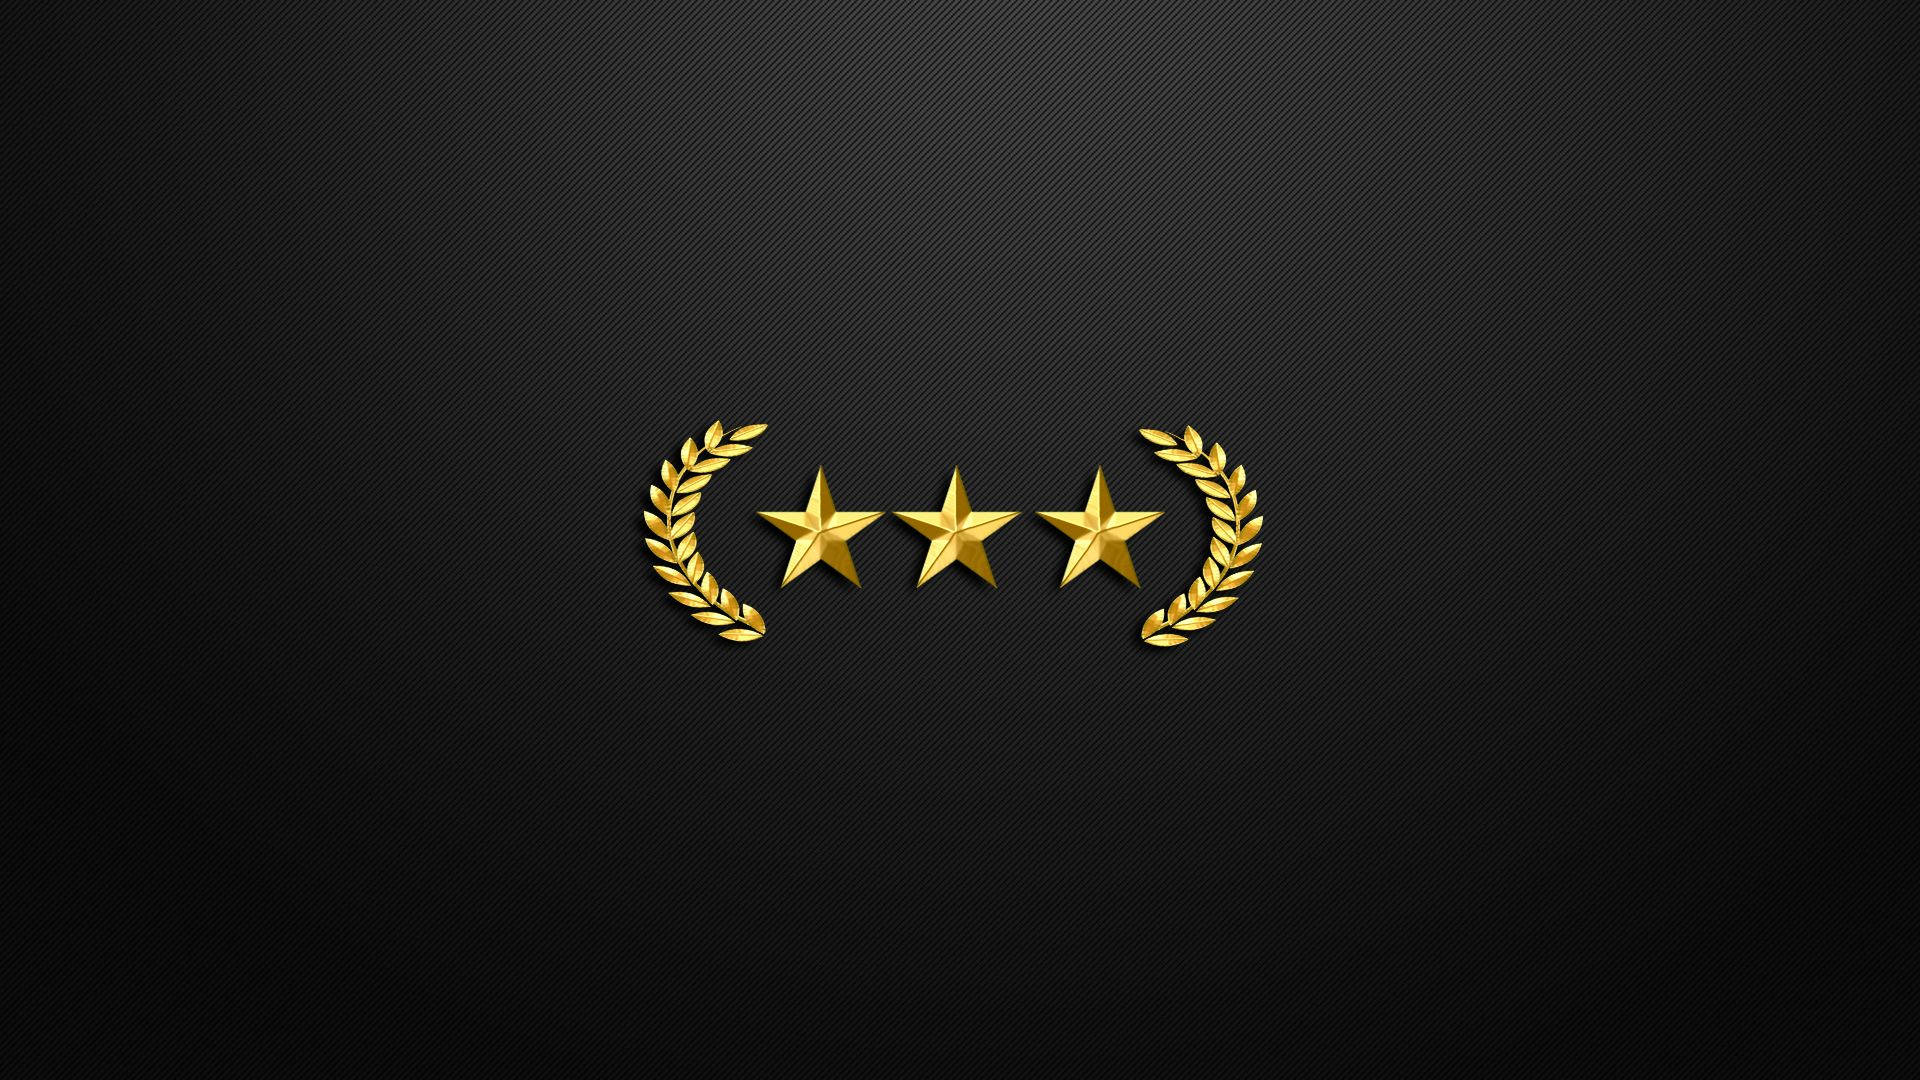 CSGO Gaming Revolution - Tri Star Logo Wallpaper